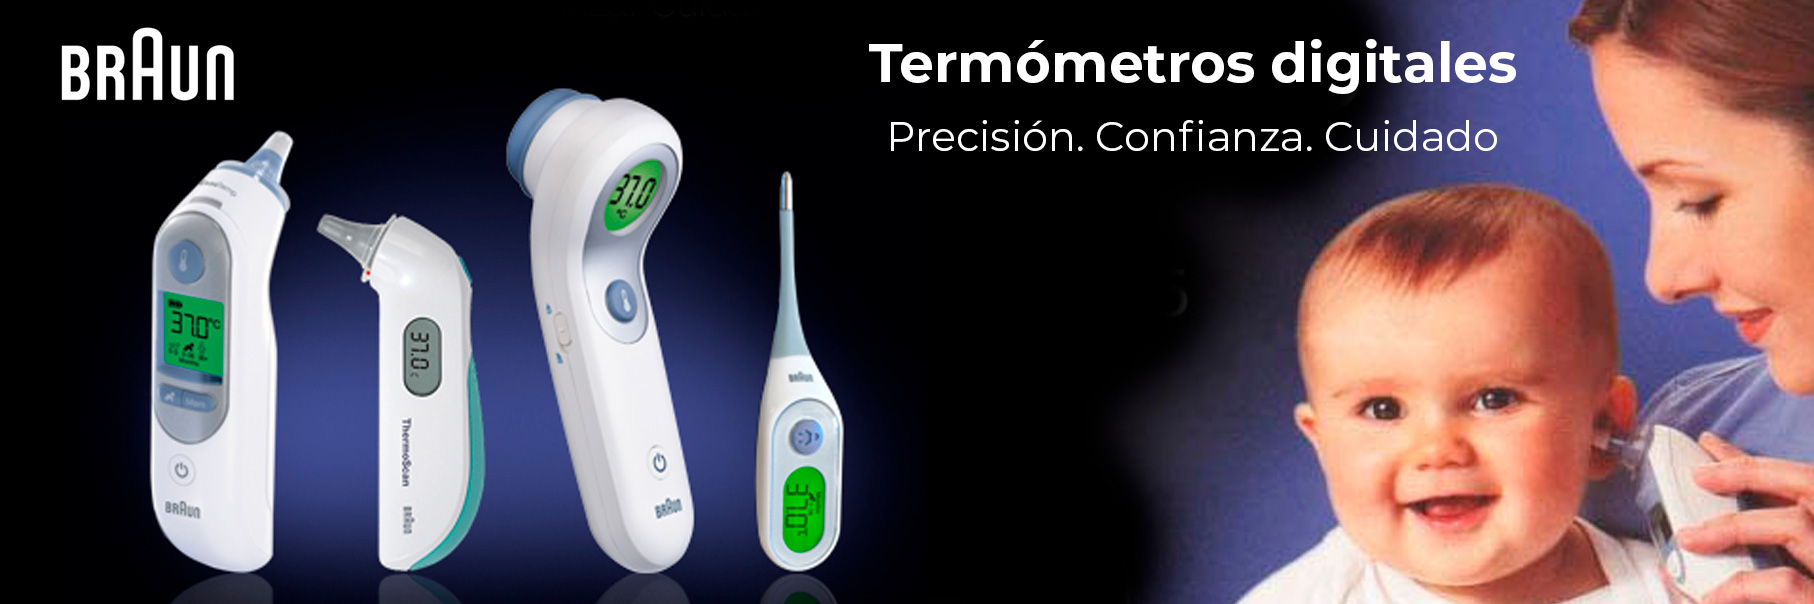 termómetros corporales digitales